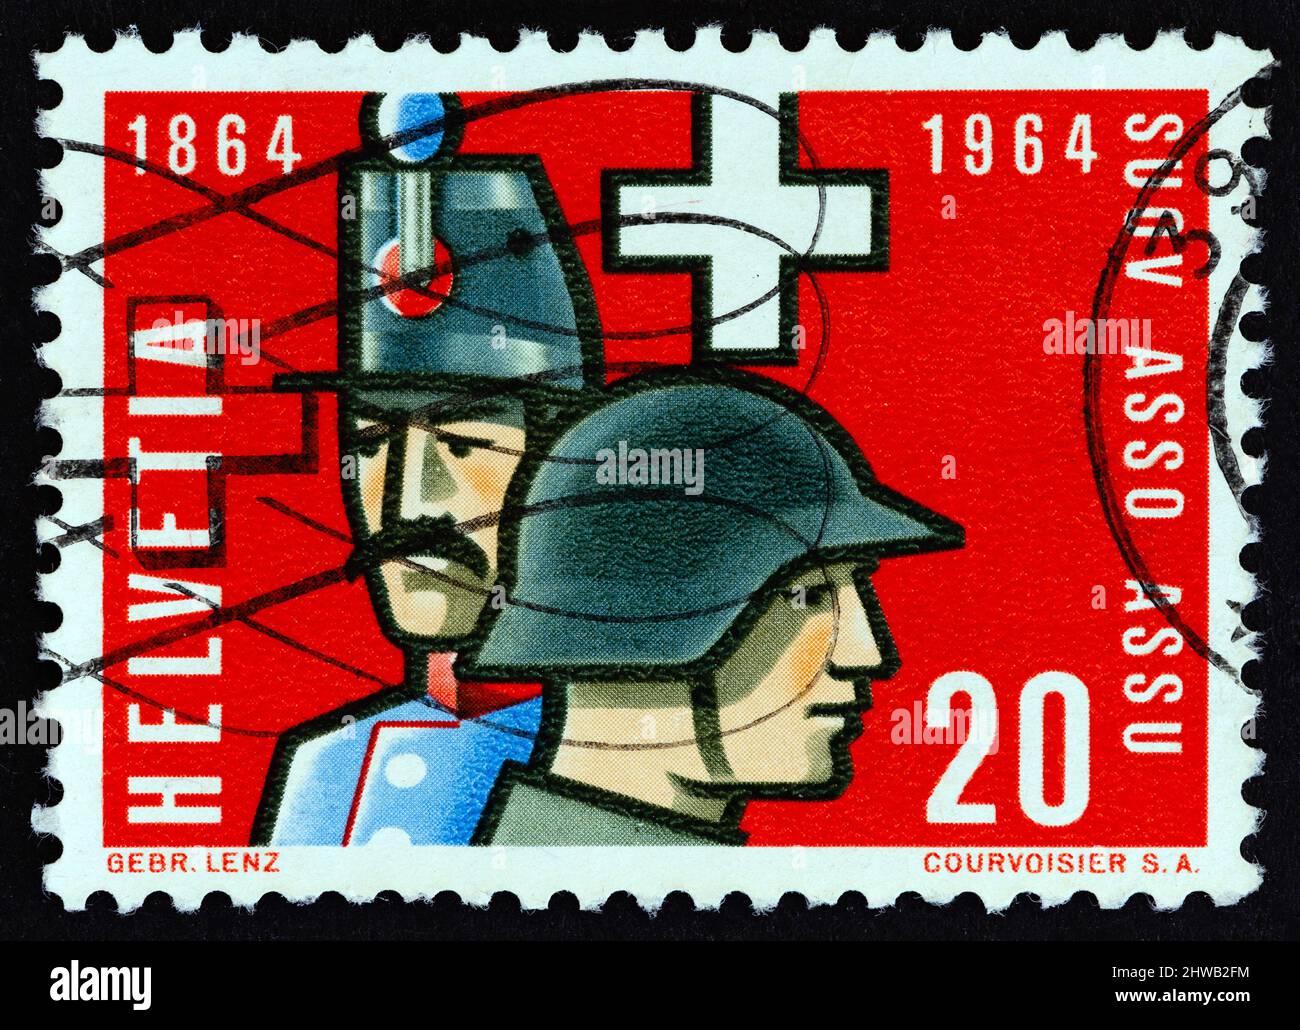 SVIZZERA - CIRCA 1964: Un francobollo stampato in Svizzera mostra i funzionari svizzeri non commissionati del 1864 e 1964, circa 1964. Foto Stock